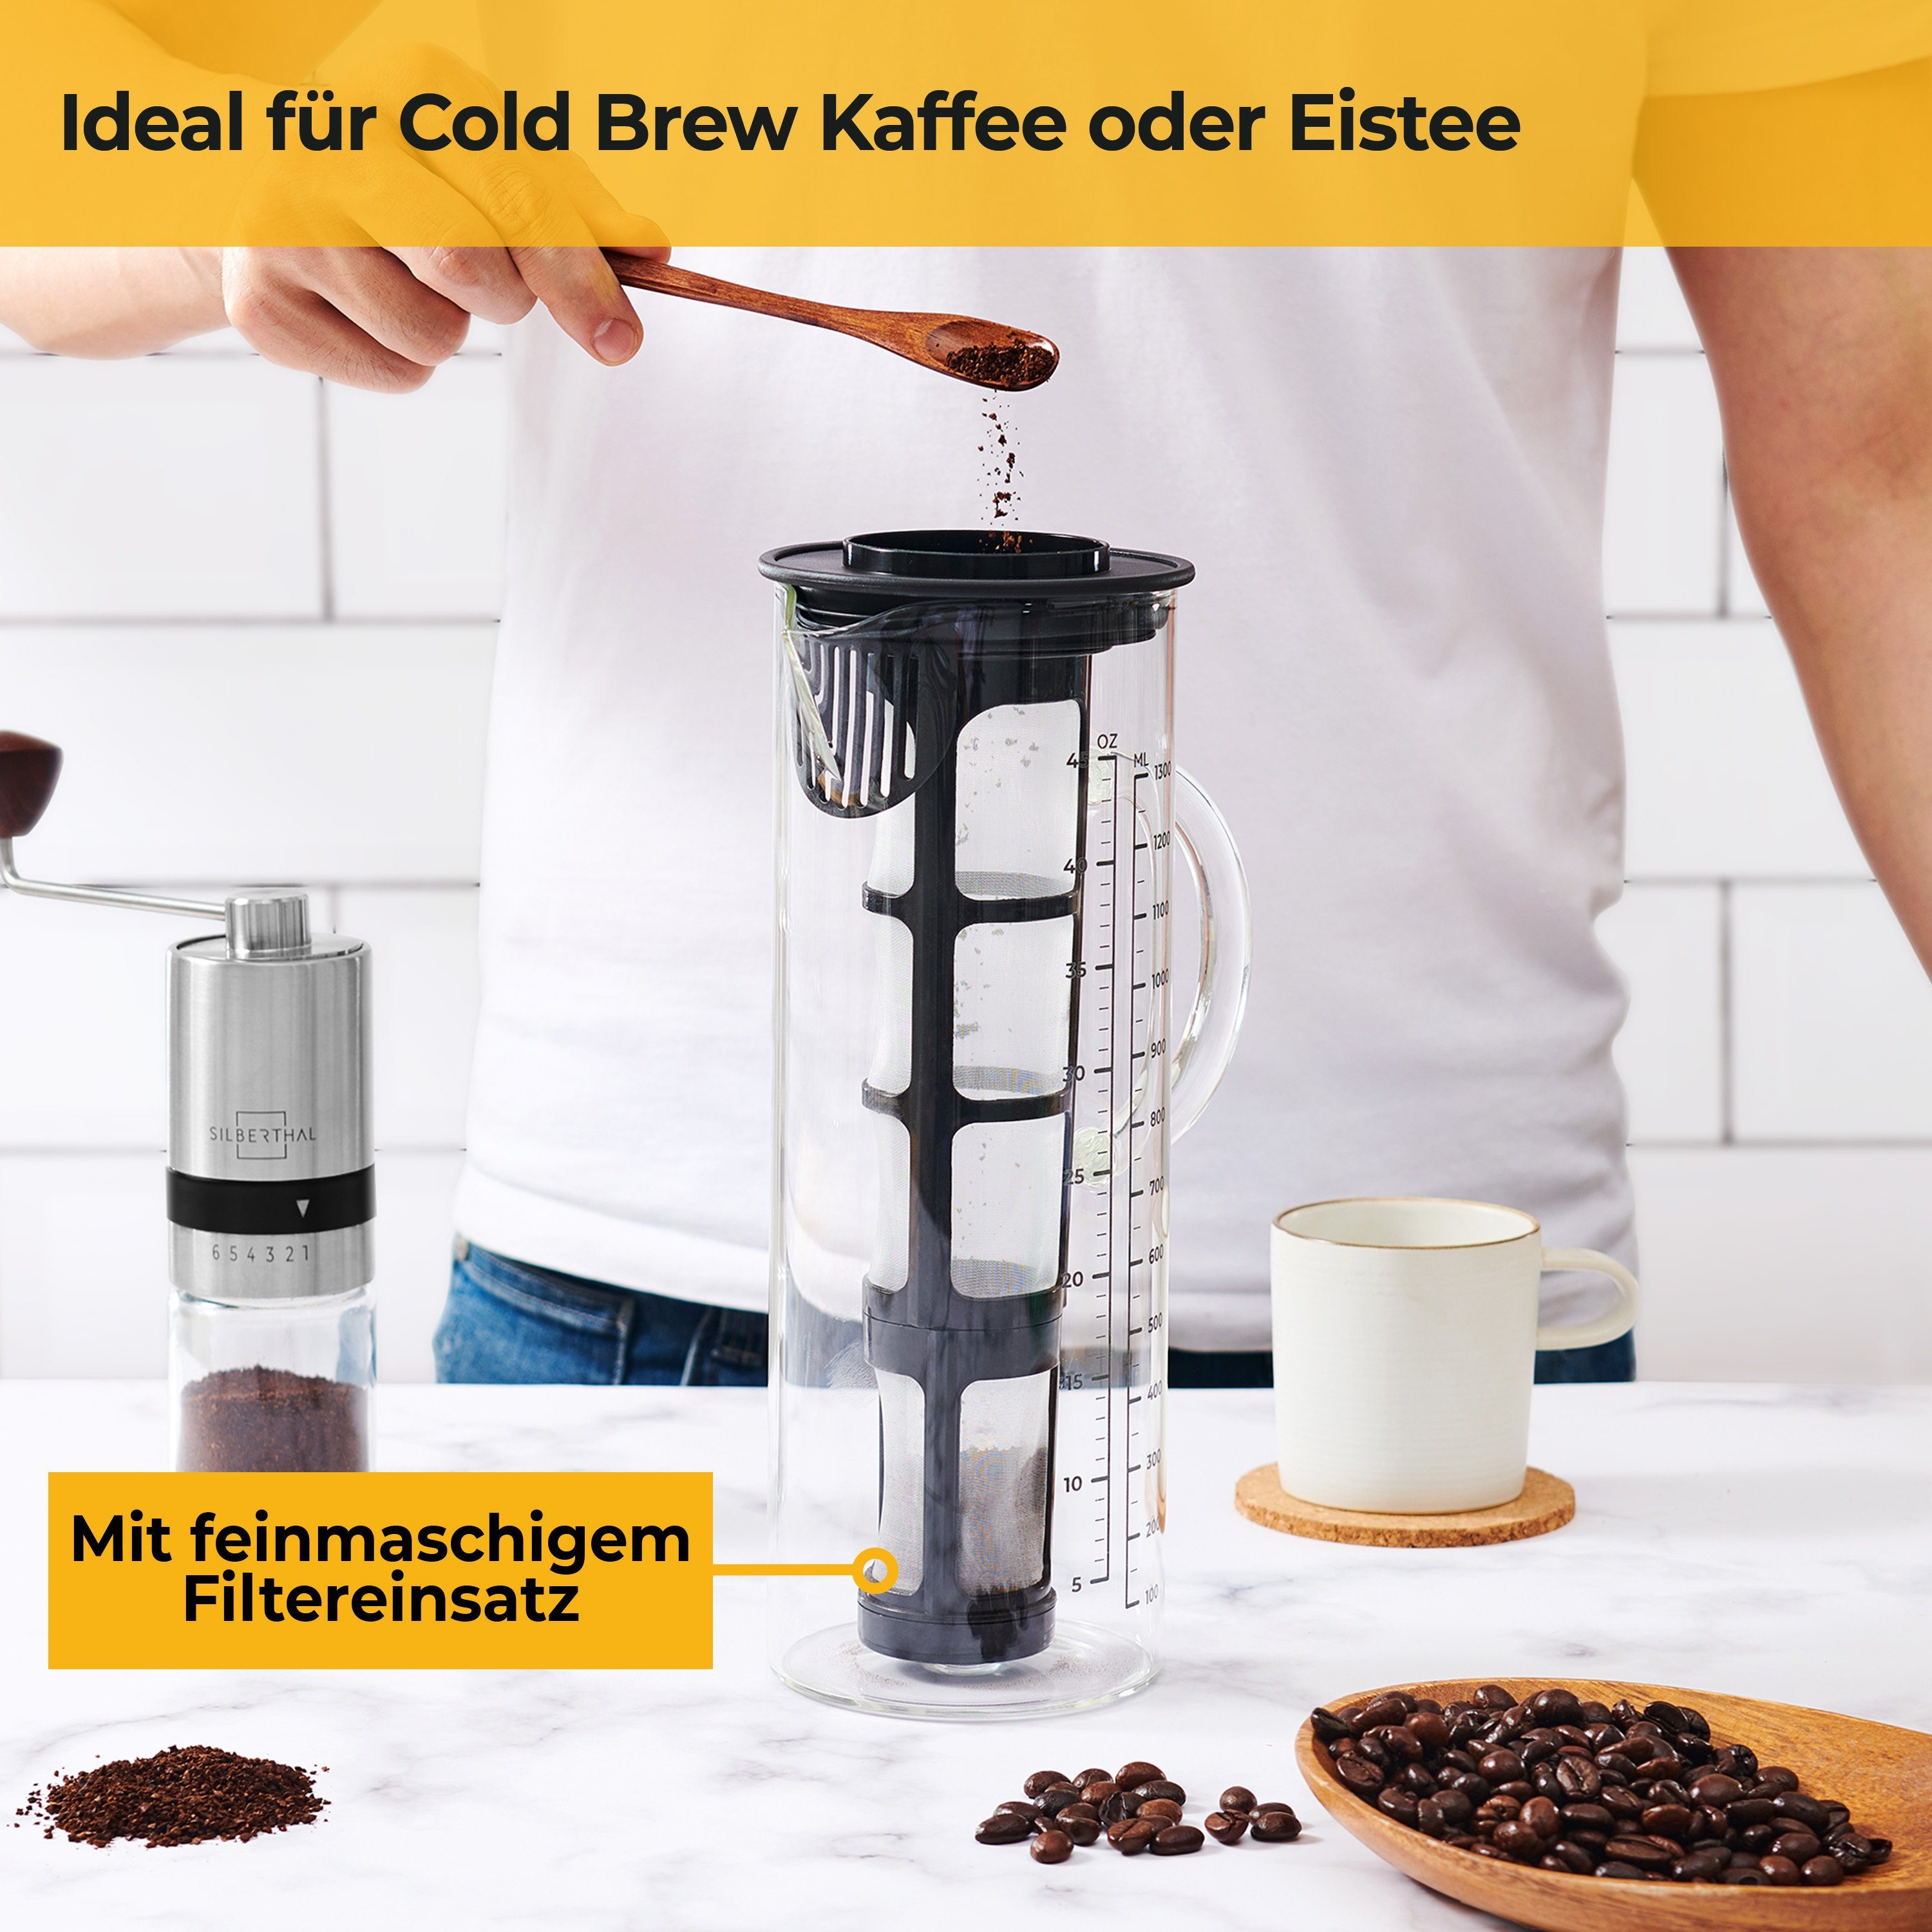 für Kühlschranktüren Sieb, Brew SILBERTHAL Kaffeekanne, Zubereiter, ideal 1.3l Cold feinmaschiges